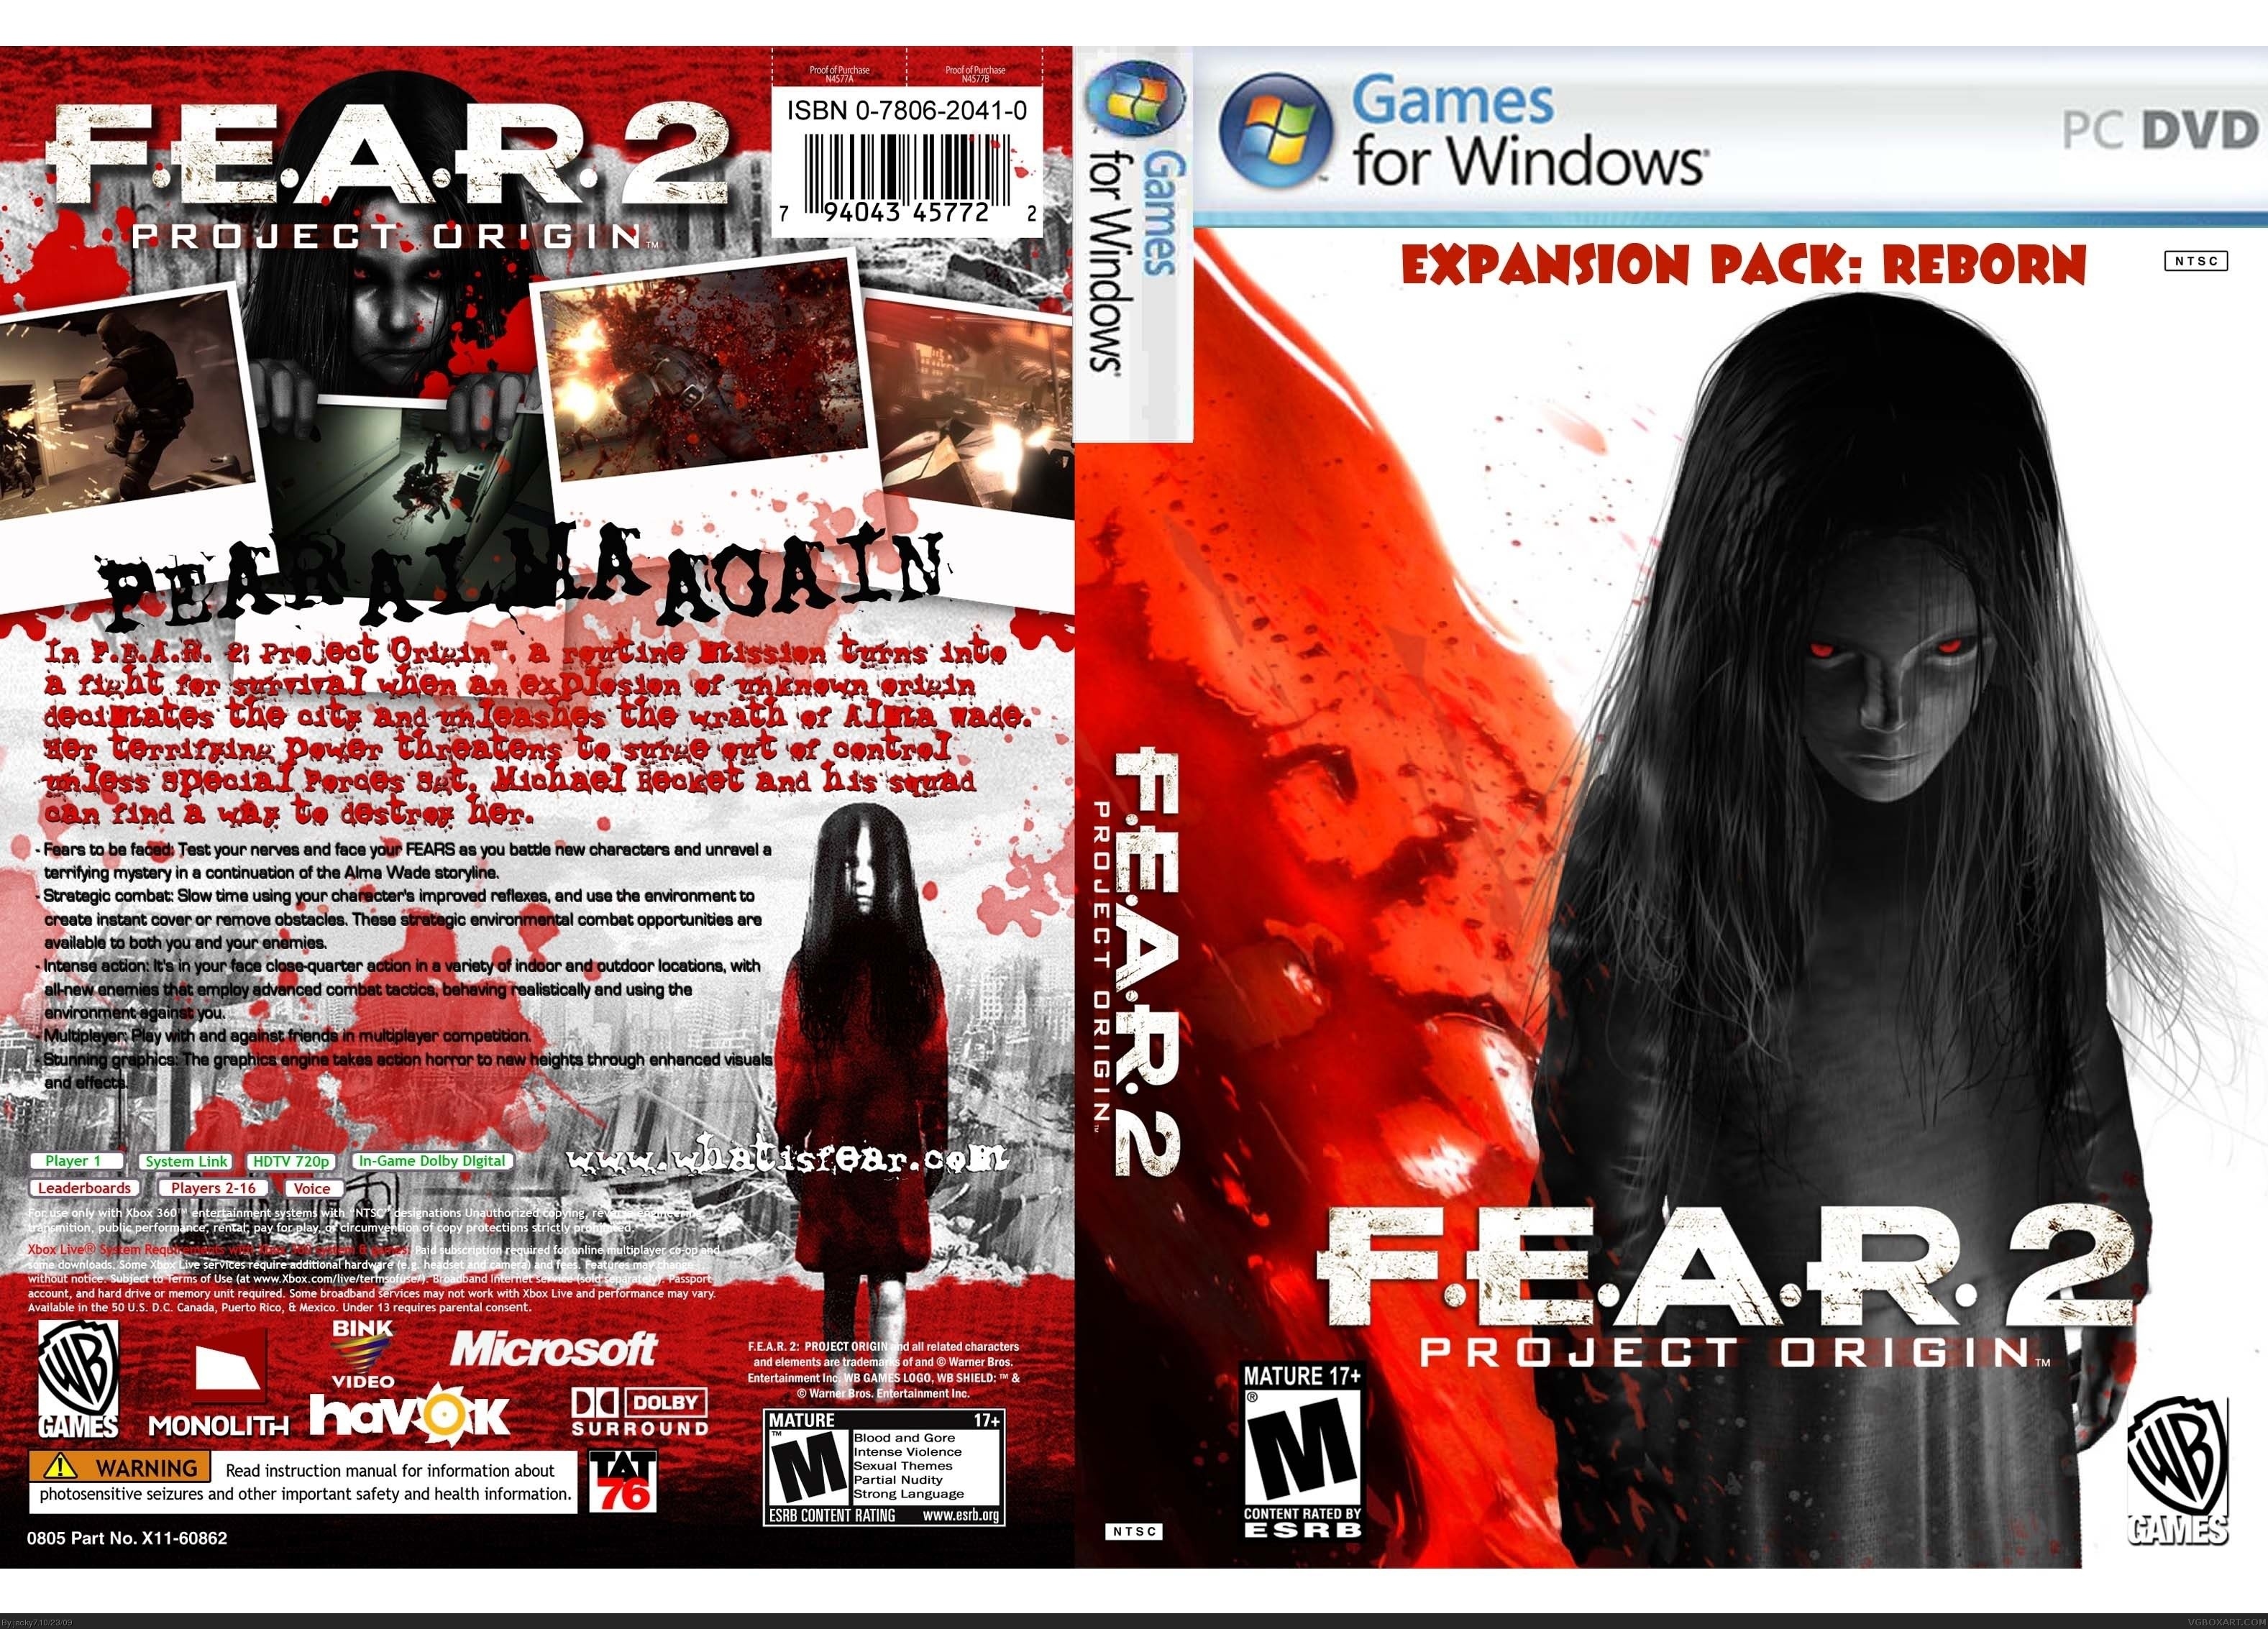 F.E.A.R 2 PROJECT ORIGIN box cover